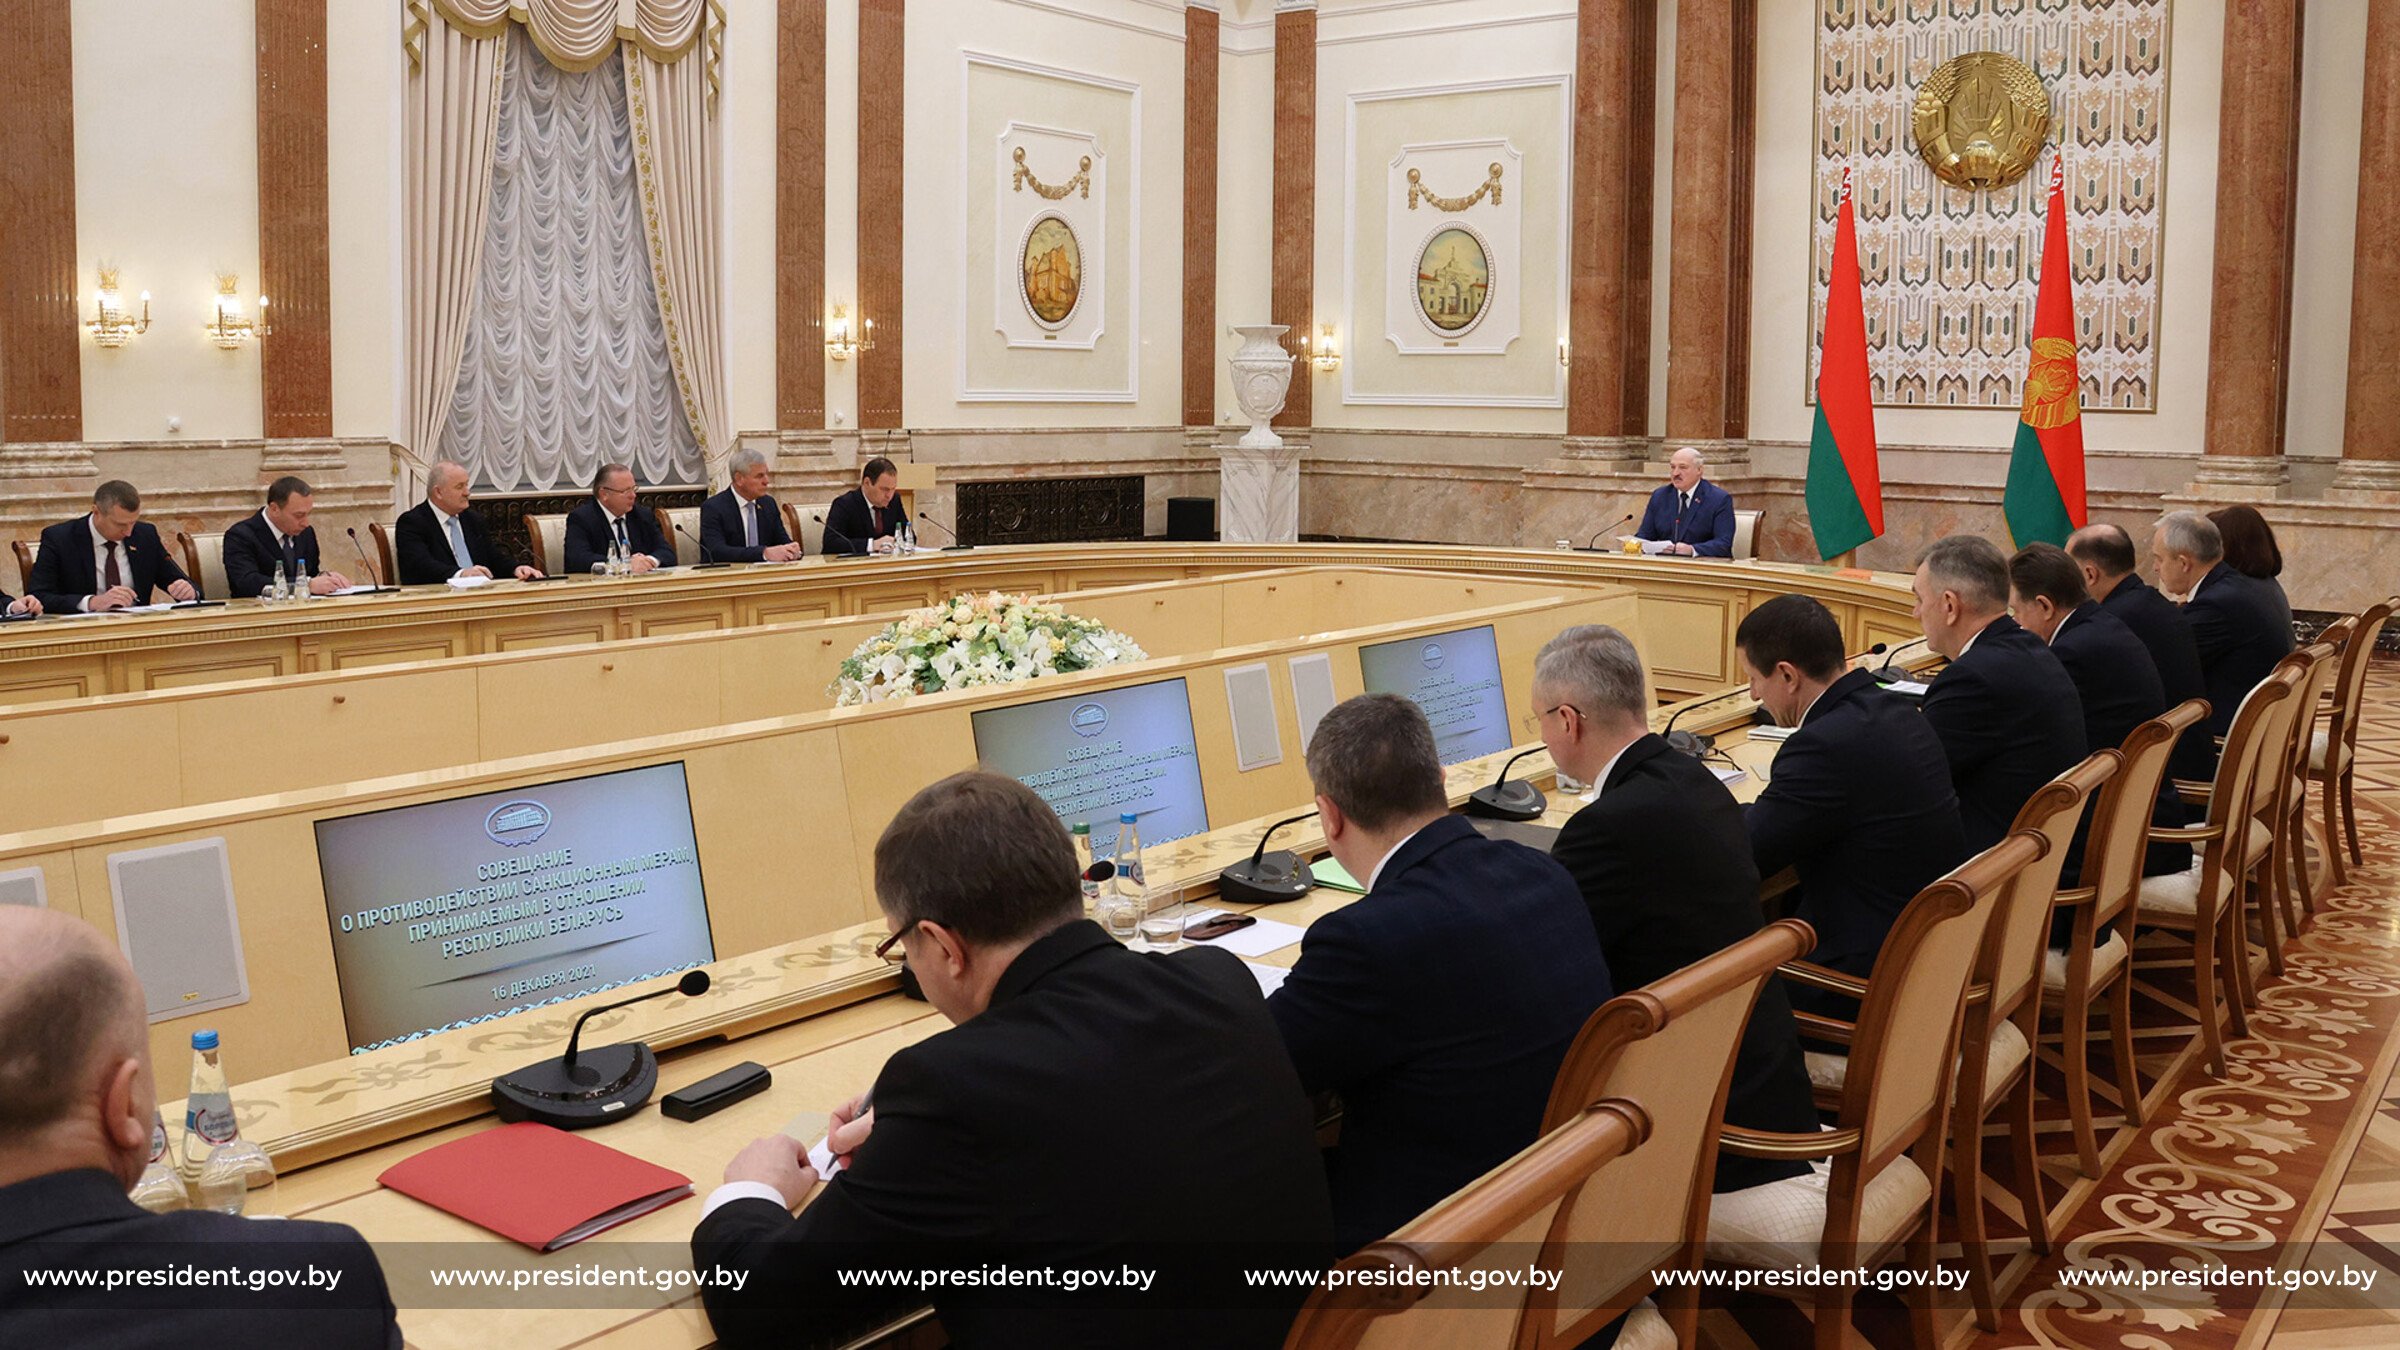 Многие руководители учреждений в Минске занимают антигосударственную позицию. Об этом президент Белоруссии Александр Лукашенко...